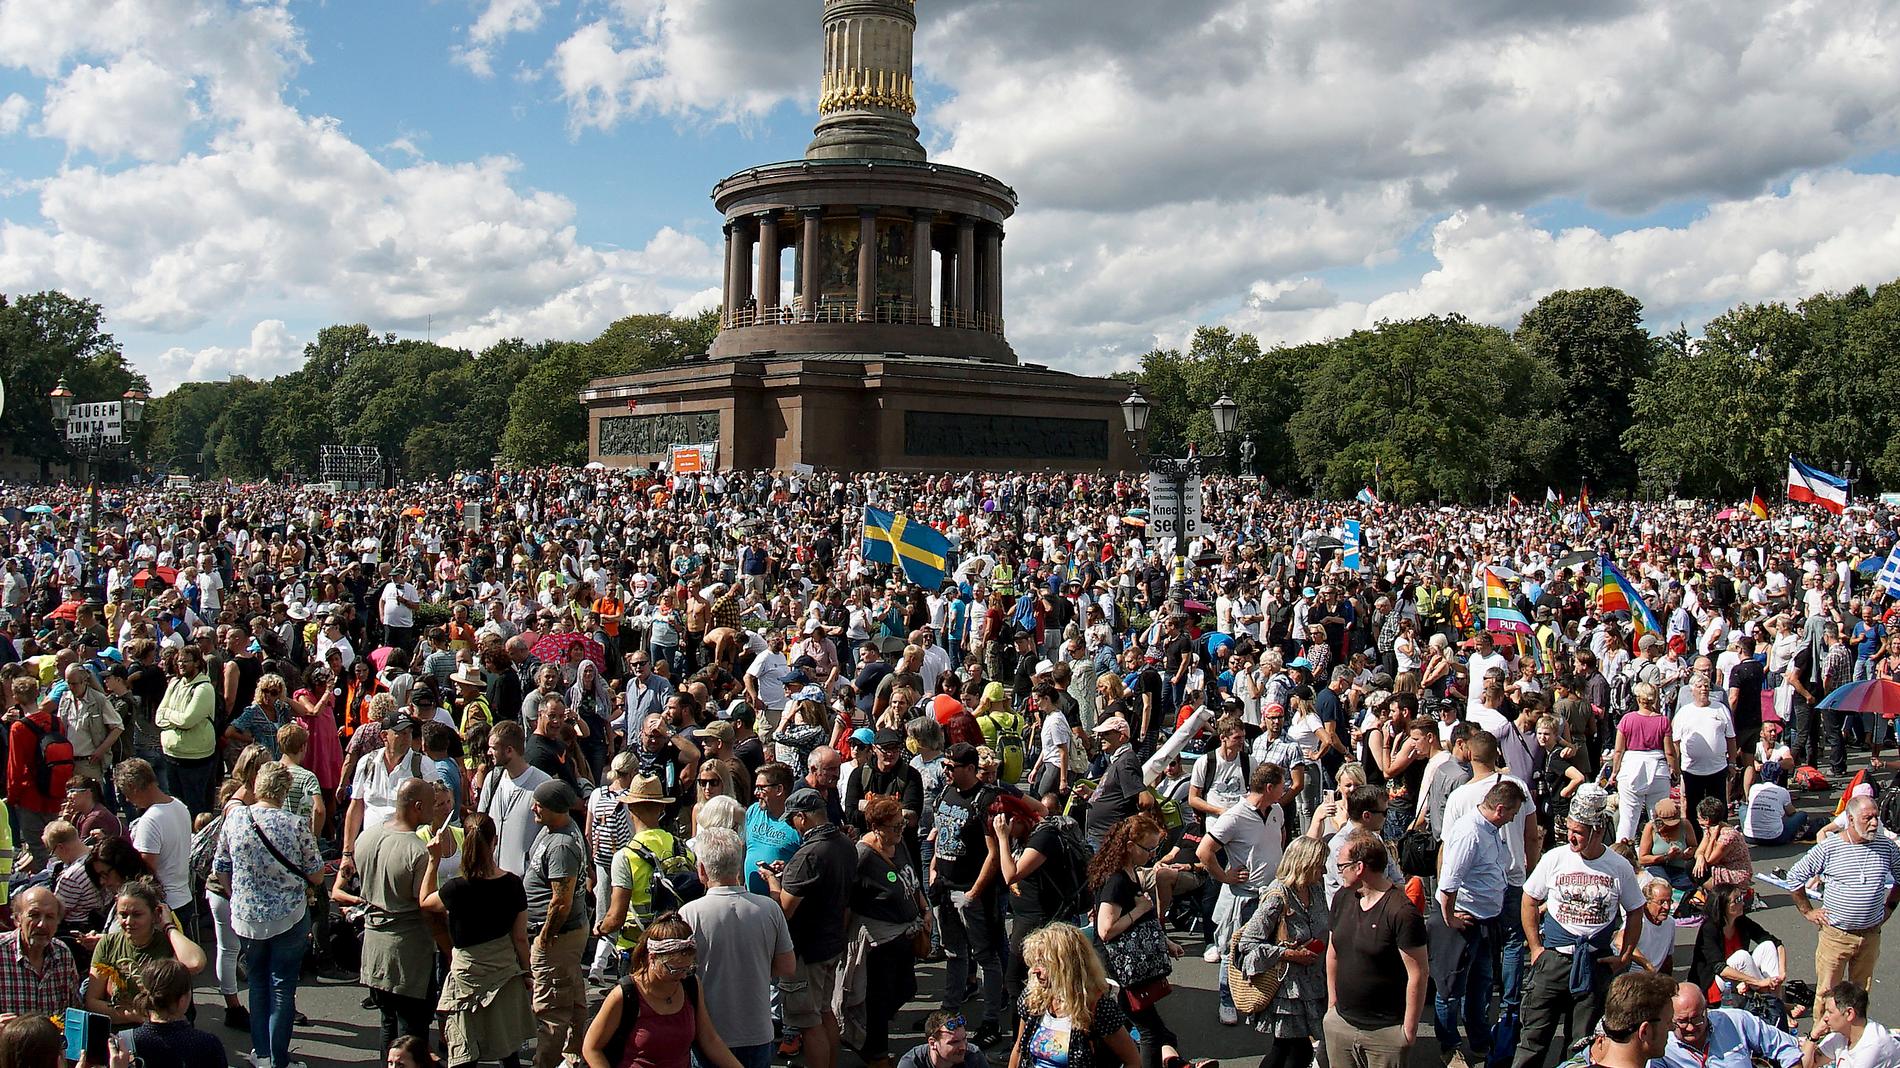 En svensk flagga vajar i vinden framför Siegessäule i Berlin, där tusentals personer samlades för en protest mot de tyska coronarestriktionerna i augusti i år.